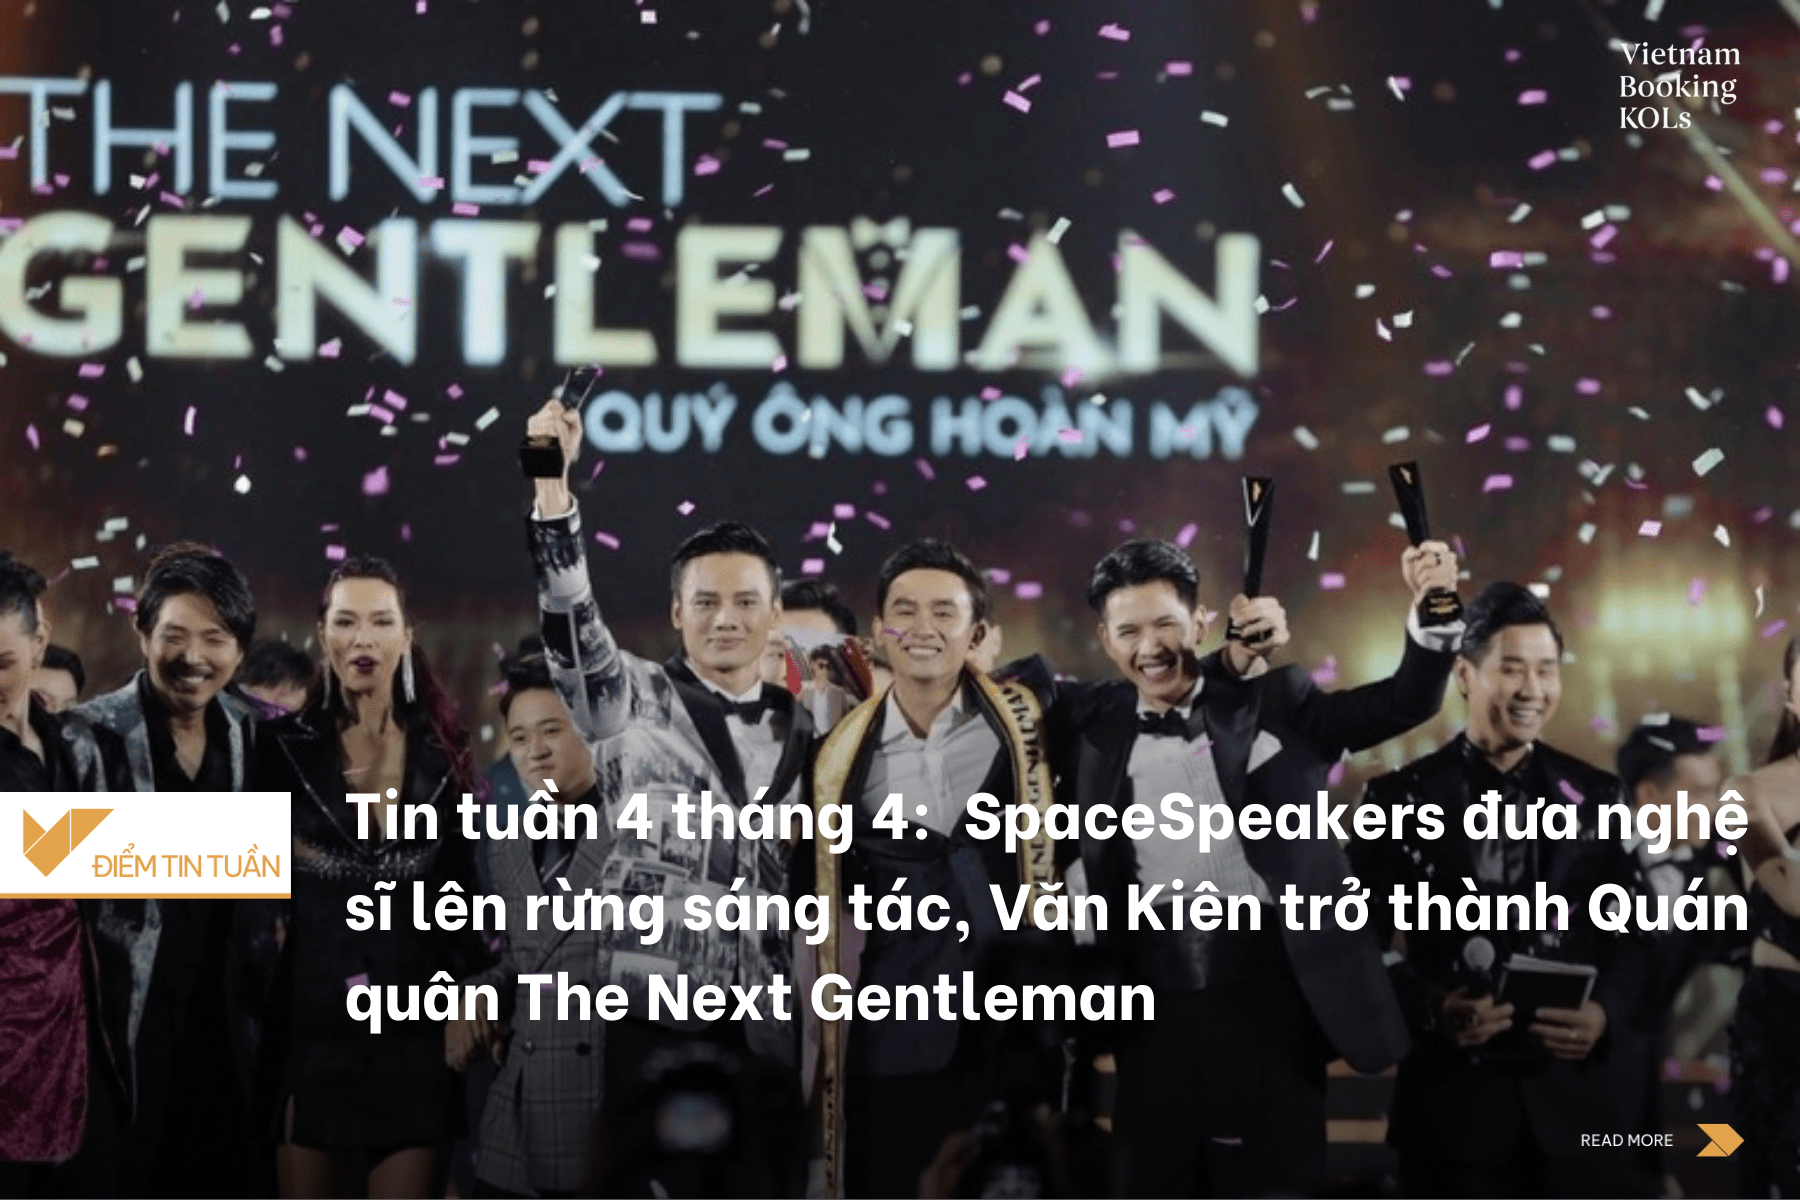 Tin tuần 4 tháng 4: Khởi động Space Jam #2, SpaceSpeakers đưa nghệ sĩ lên rừng sáng tác, Văn Kiên - học trò của Hương Giang trở thành Quán quân The Next Gentleman